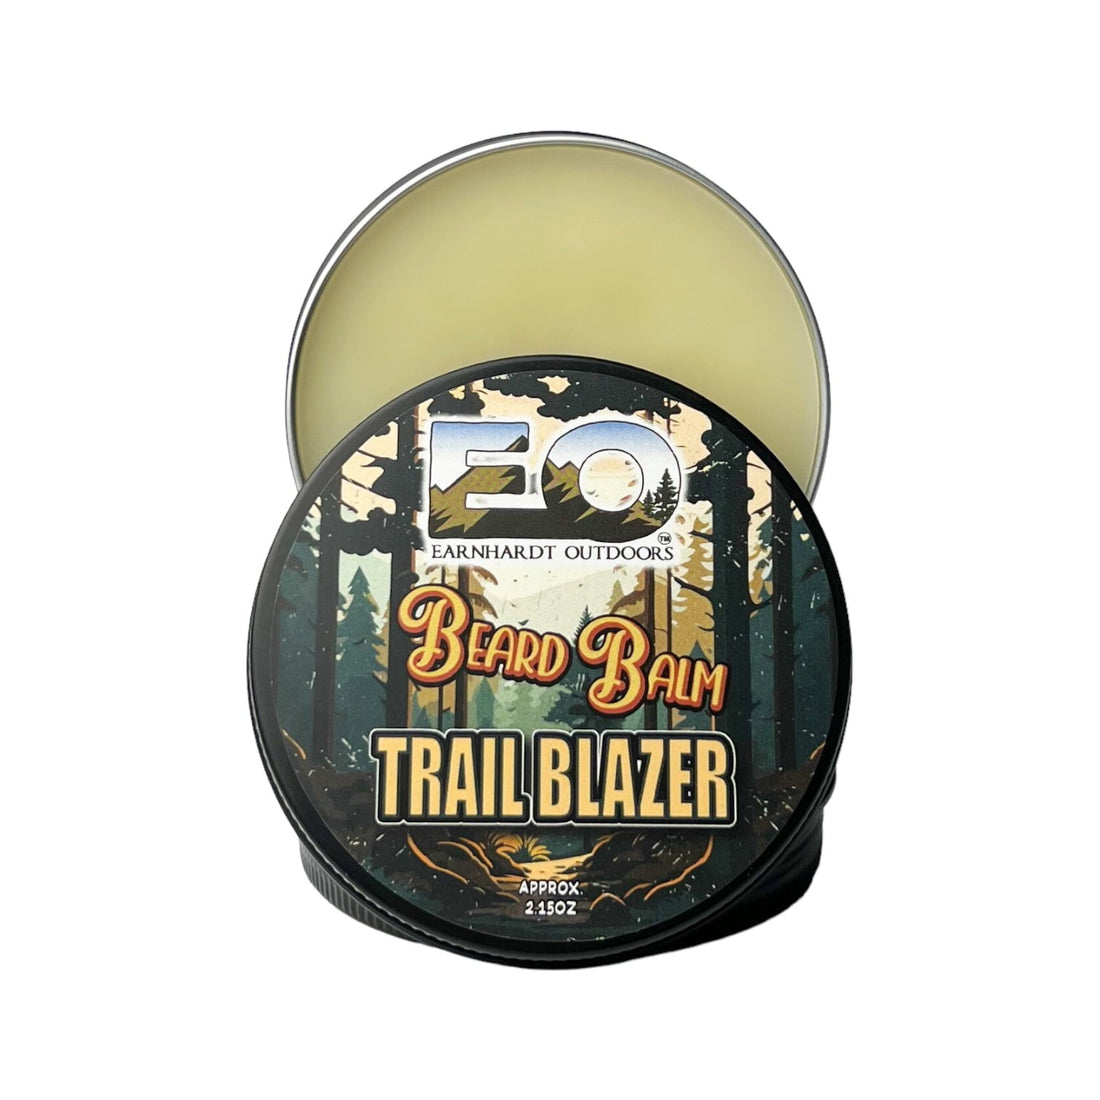 Trail Blazer Earnhardt Outdoors Beard Balm - Old Town Soap Co.